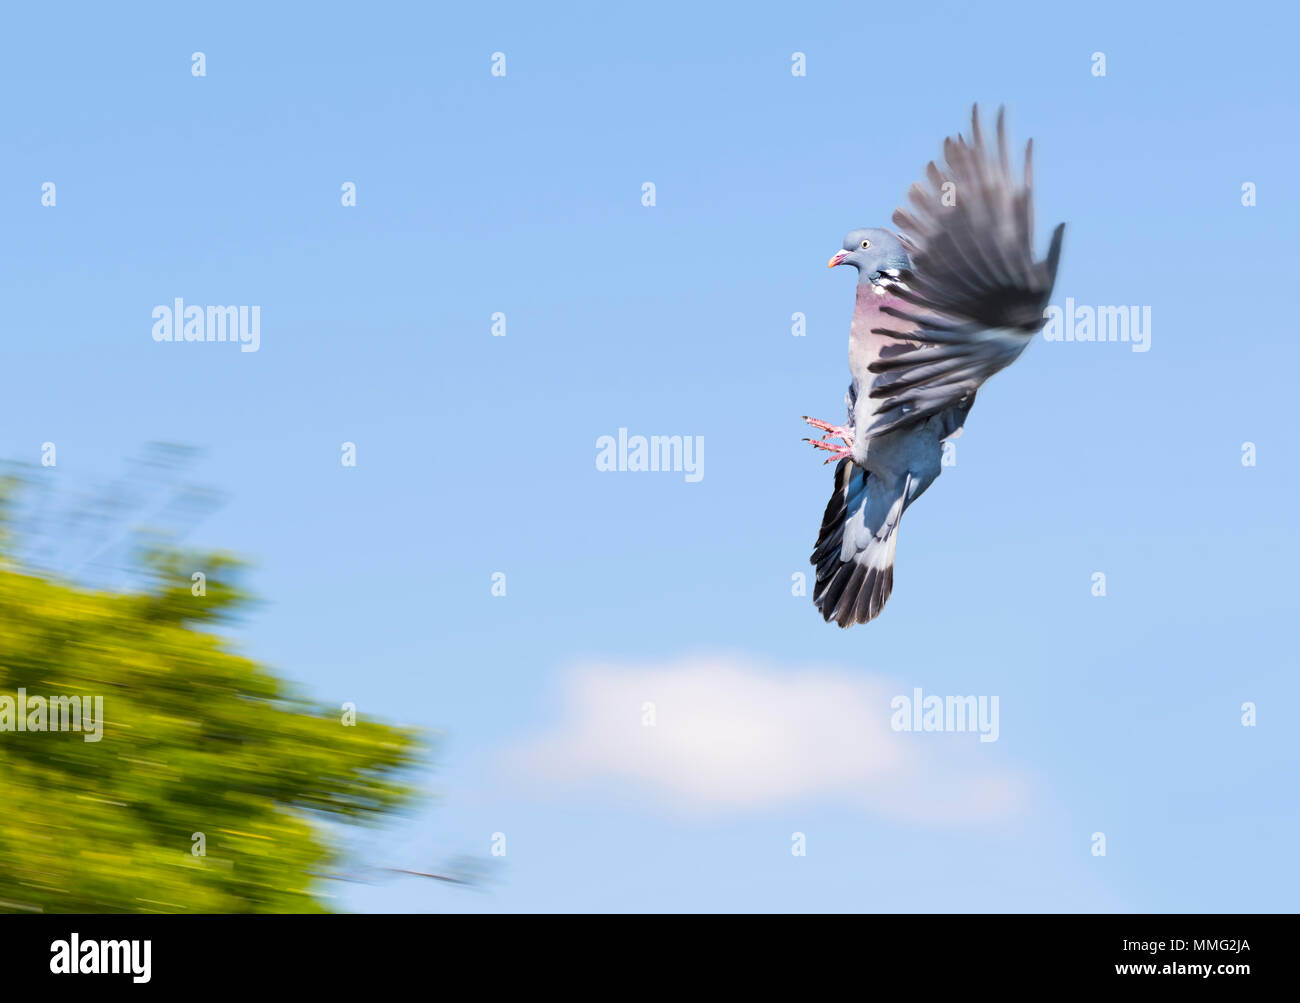 Pigeon de bois (Columba Palumbus) avec des ailes gelées dans l'air contre le ciel bleu et entrant dans la terre sur un arbre, au Royaume-Uni. Woodpigeon volant. Banque D'Images